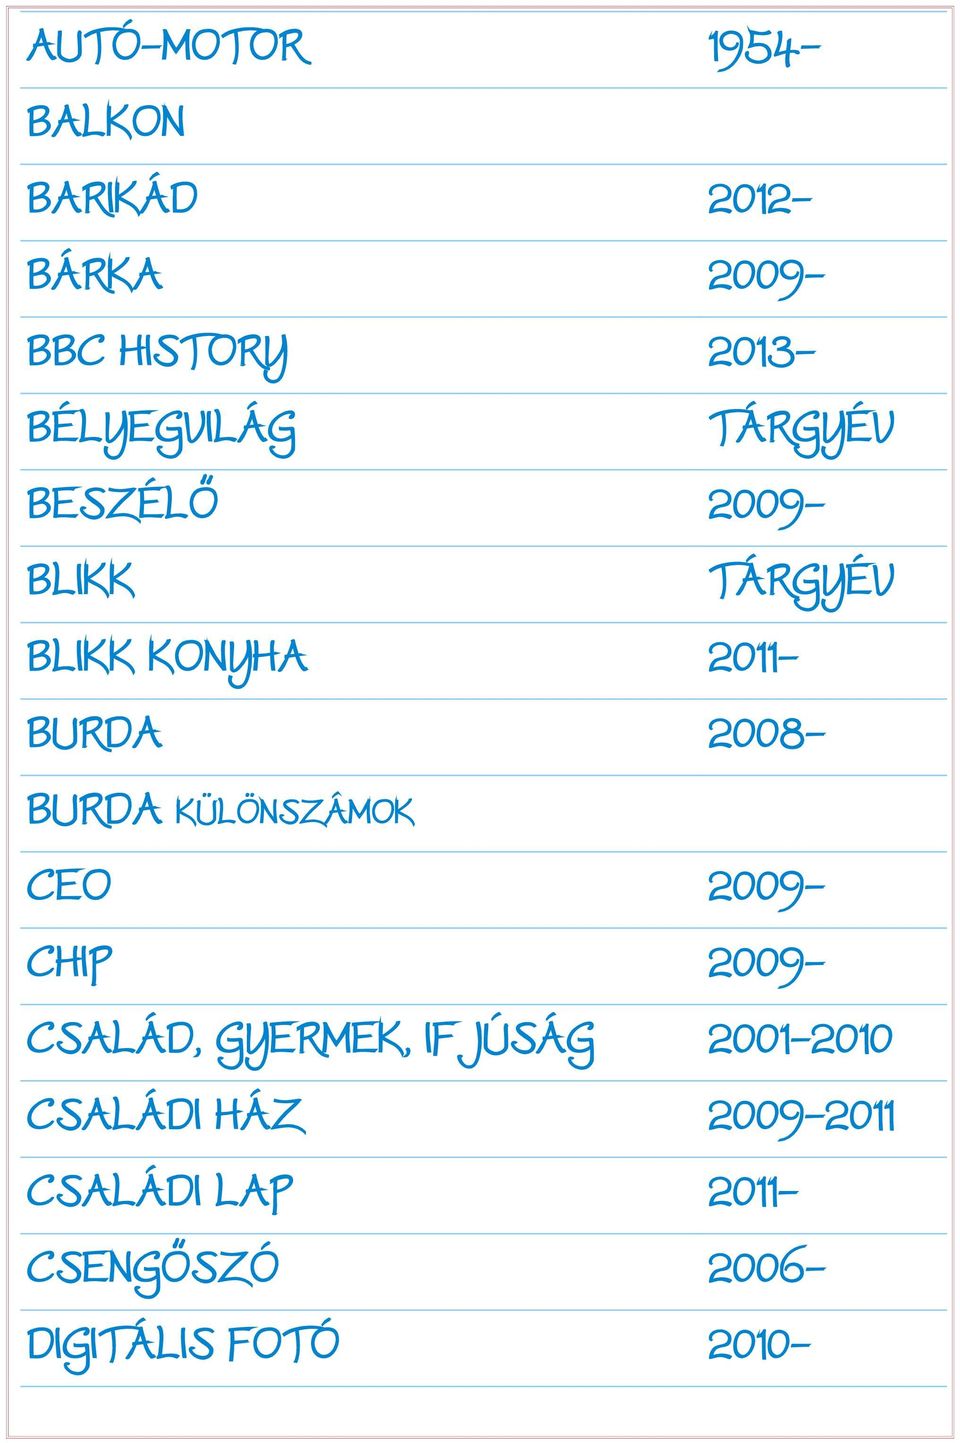 2008- BURDA KÜLÖNSZÁMOK CEO 2009- CHIP 2009- CSALÁD, GYERMEK, IFJÚSÁG